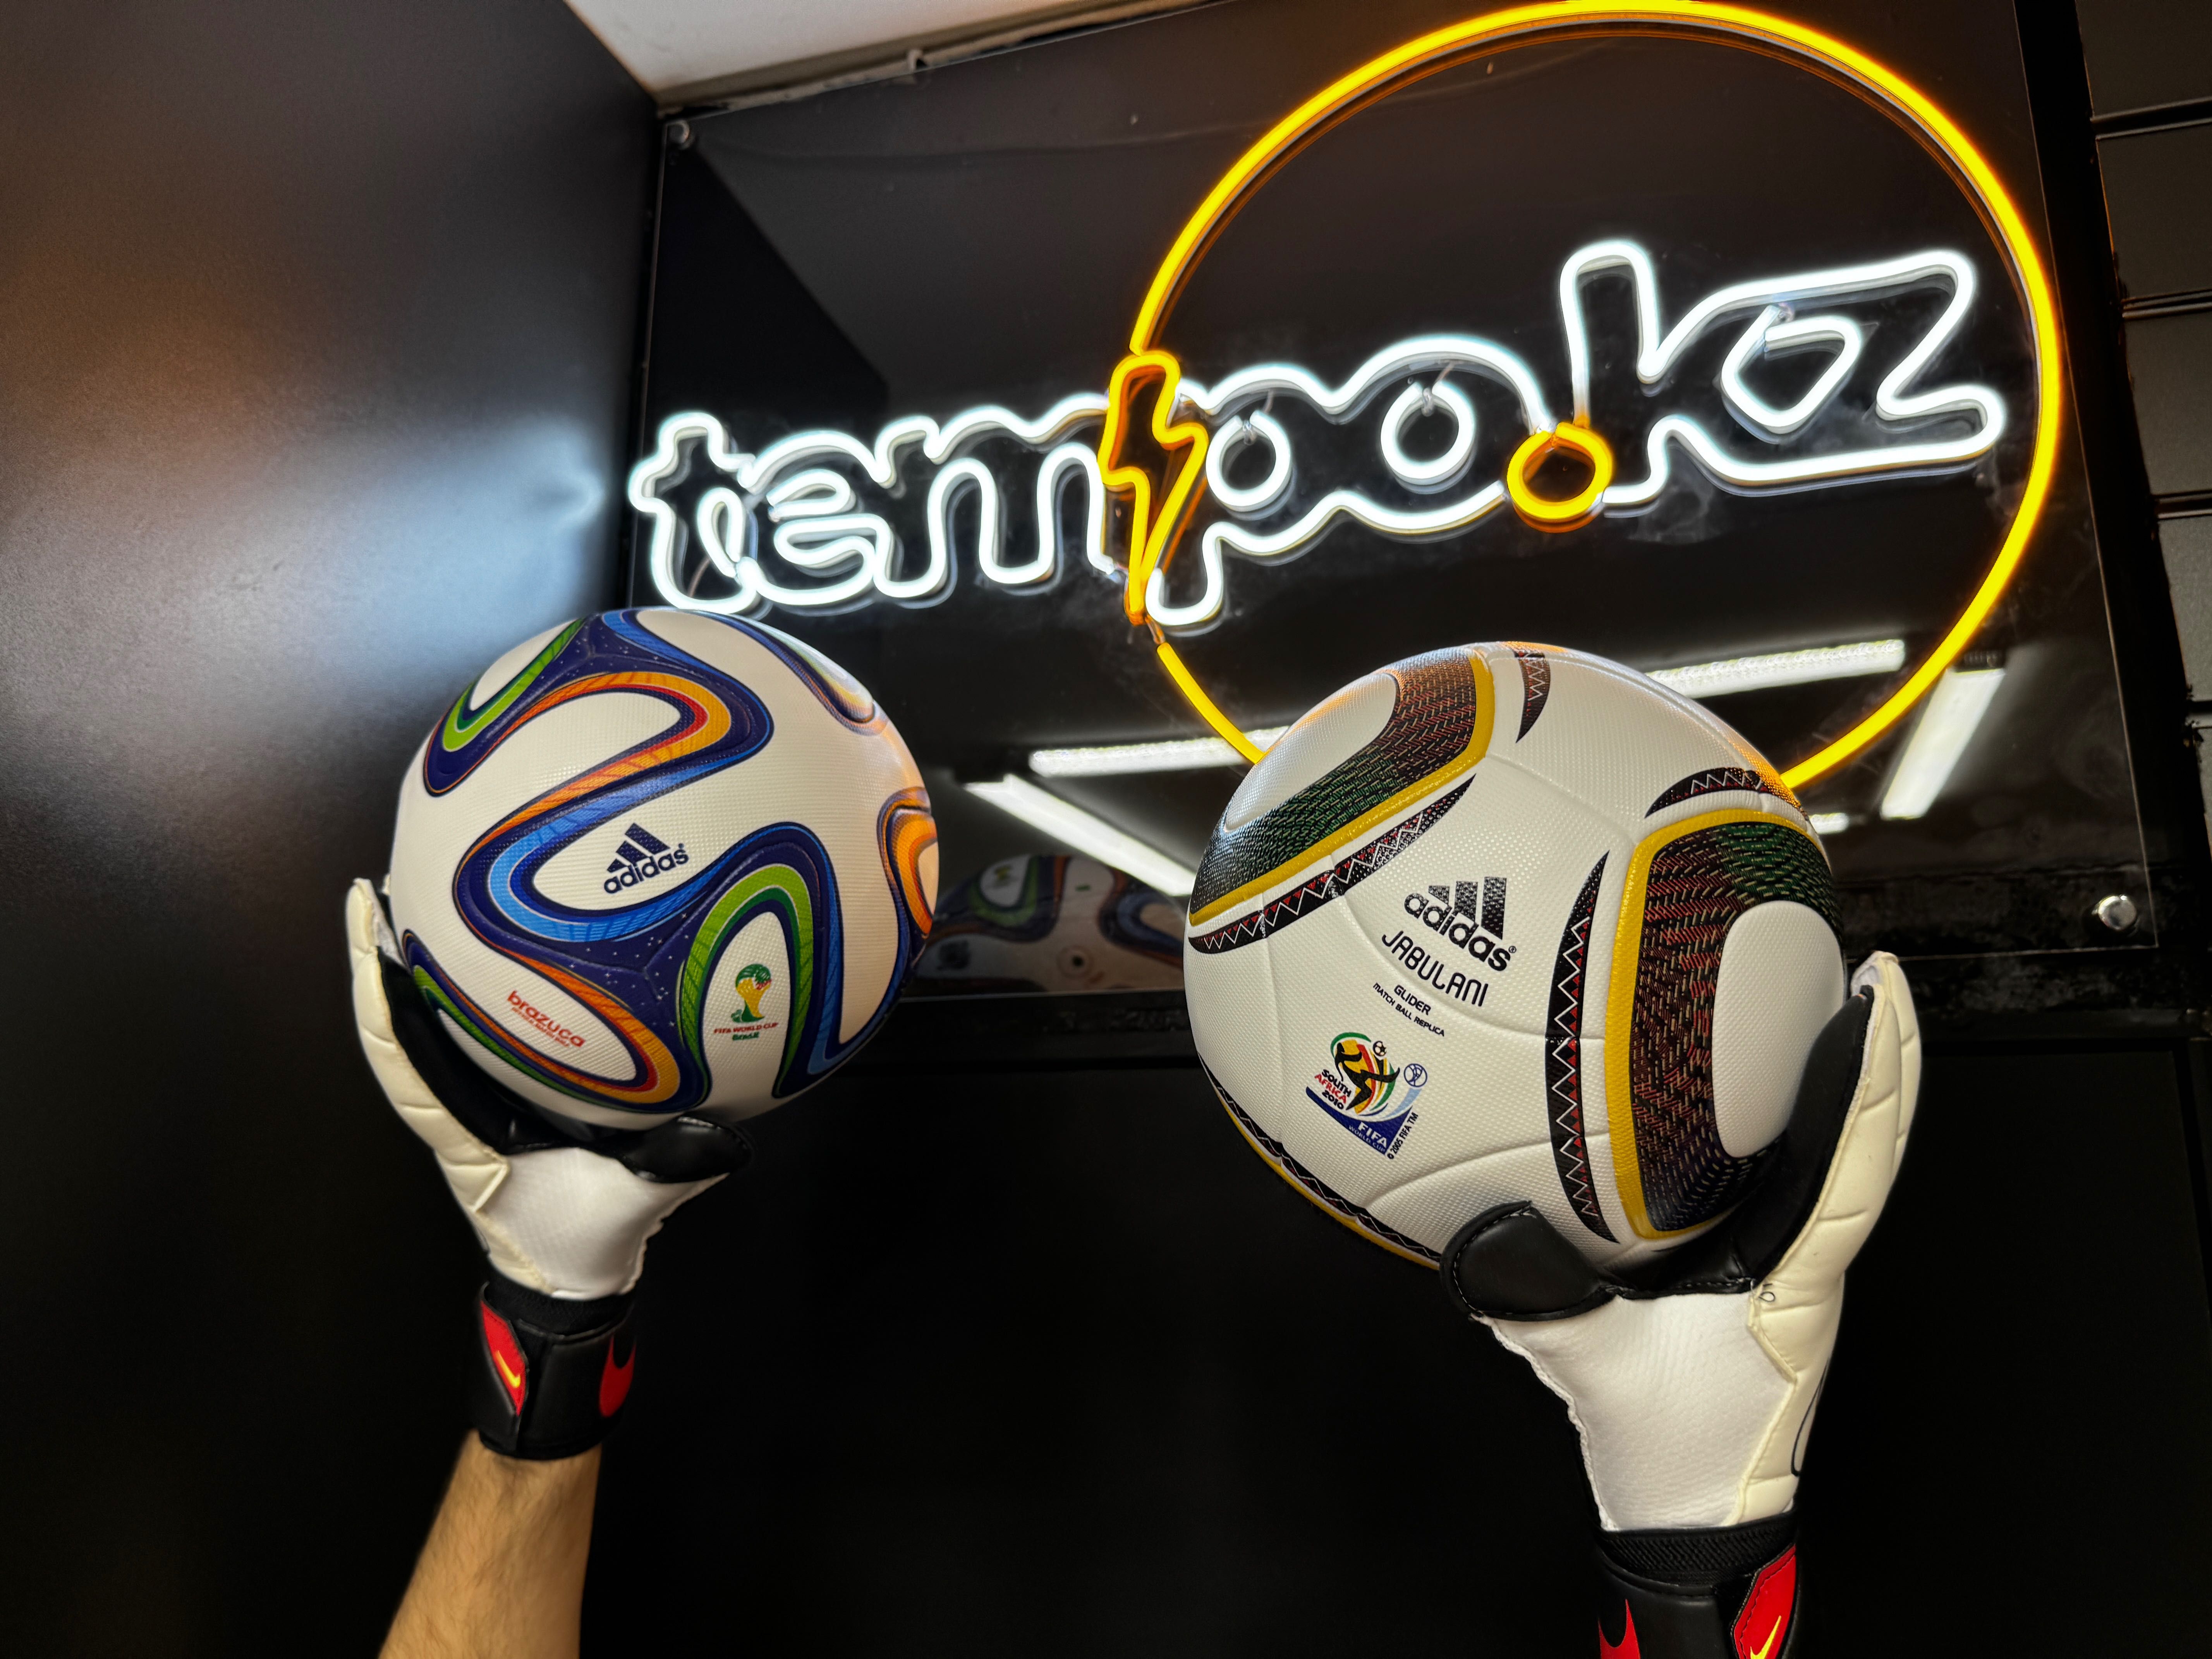 Футбольный мяч Adidas 2014 Brazuca World Cup чемпионат мира